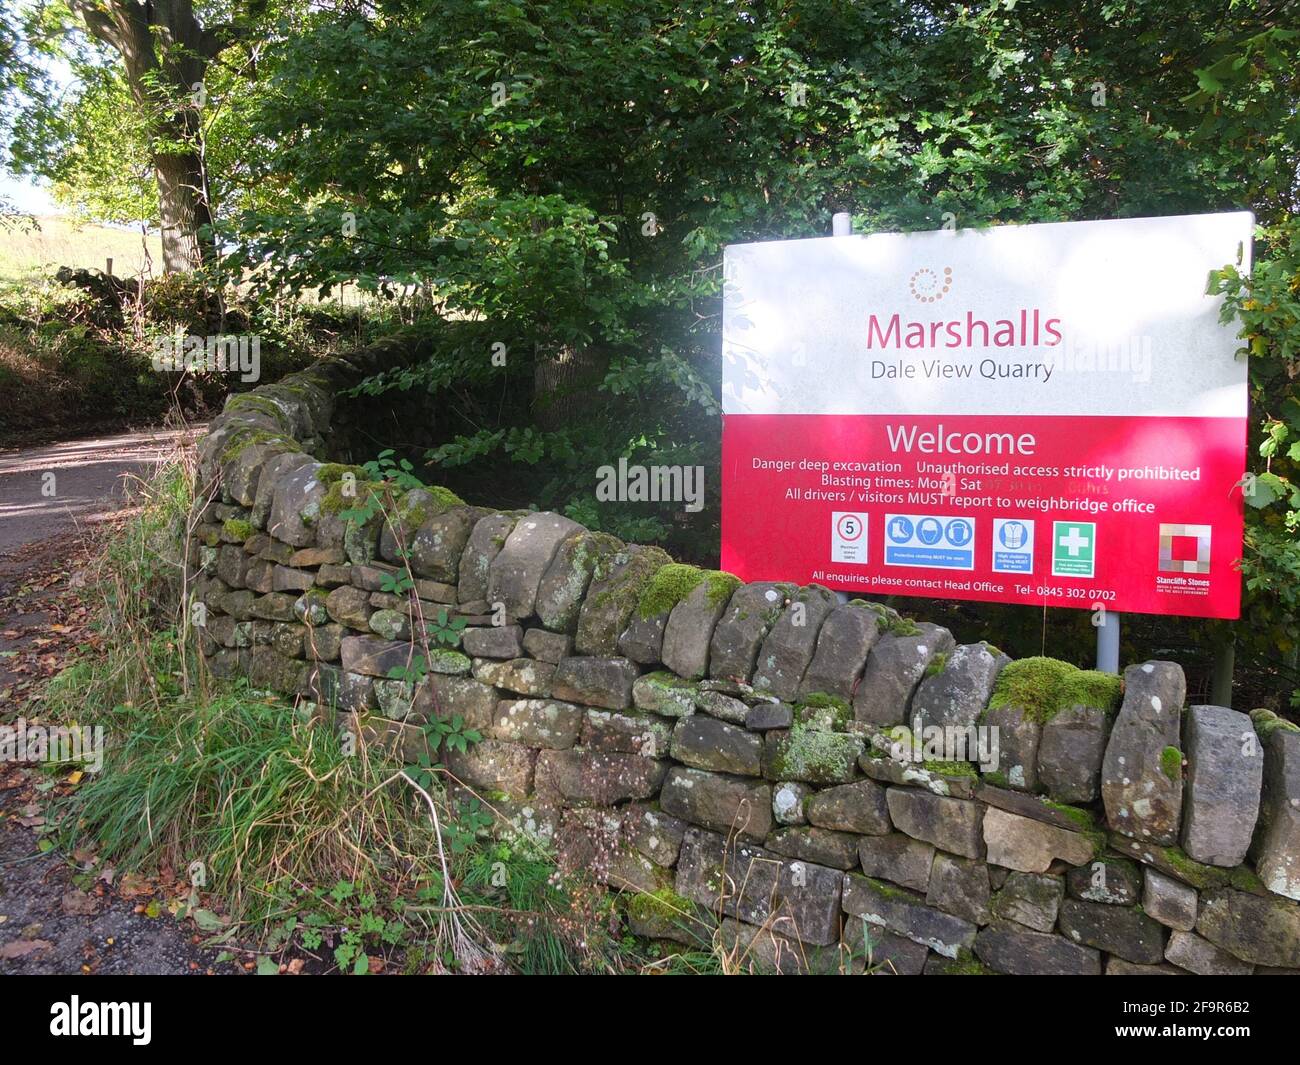 Panneau pour Marshalls Dale View Quarry à Stanton Lees dans le district de Derbyshire Peak.Ouvert à la suite de la manifestation en 2000s dans une carrière proche de Nine Ladies. Banque D'Images